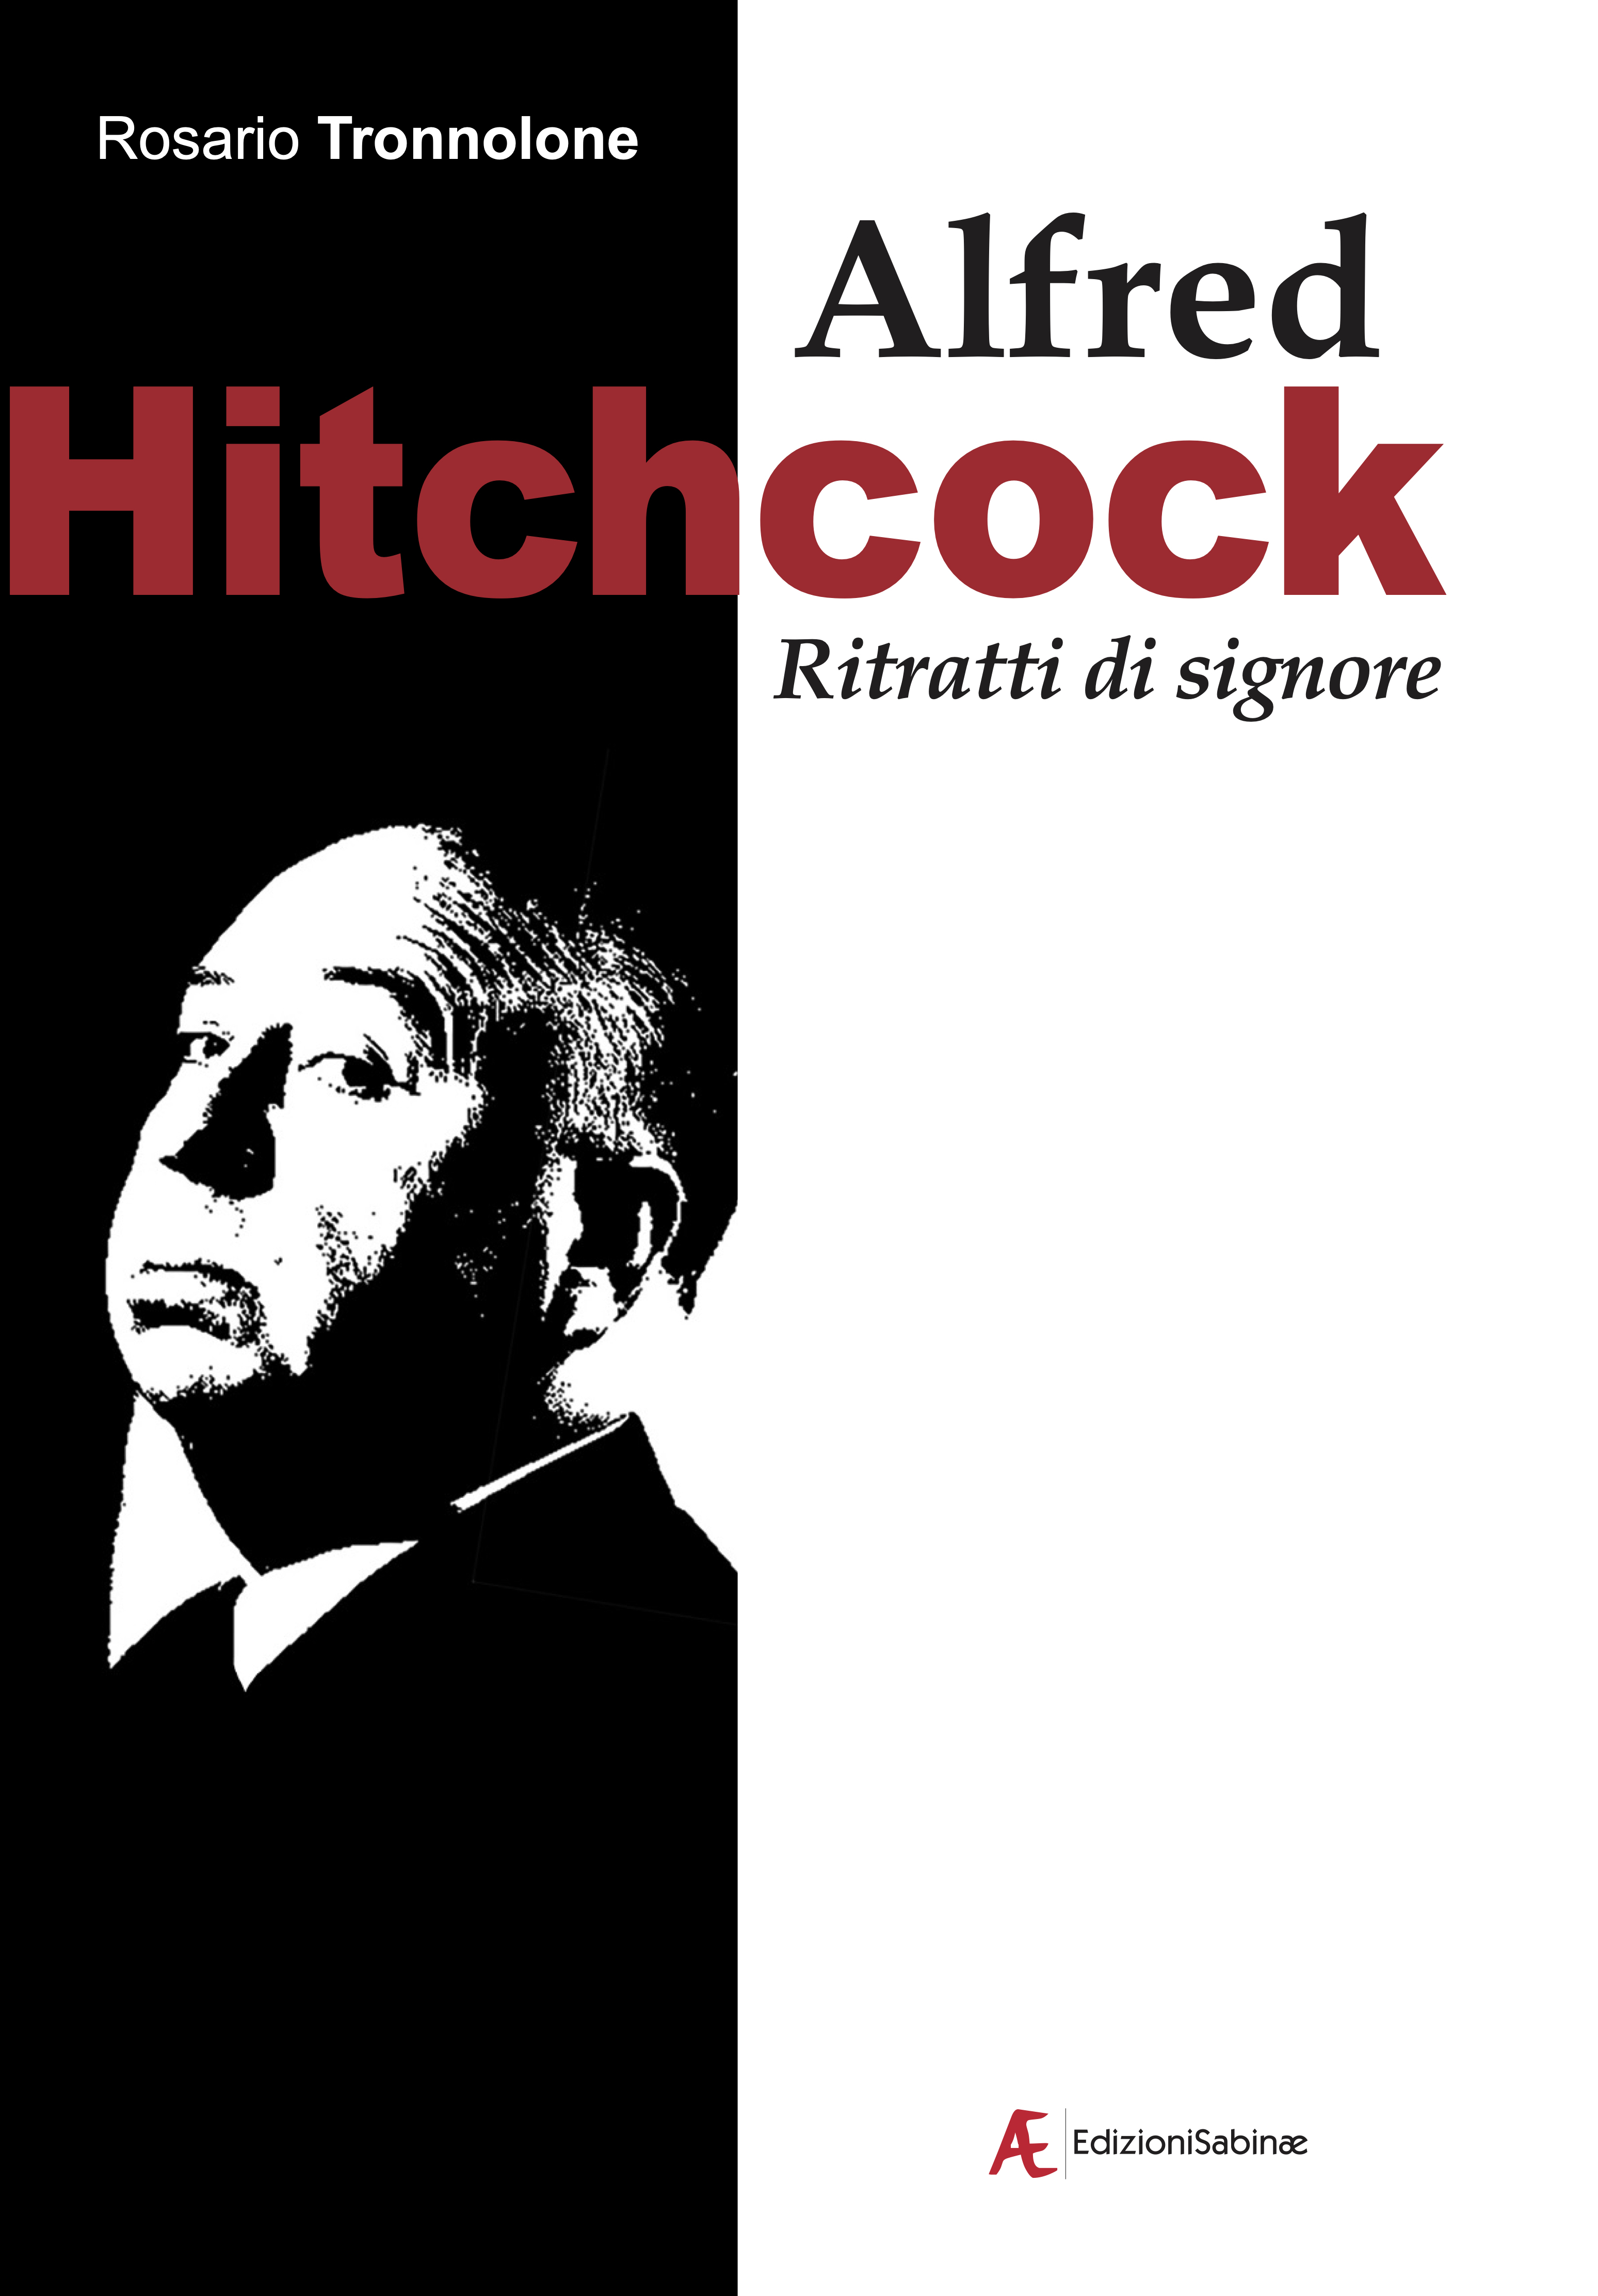 alfred-hitchcock-ritratti-signore_rosario-tronnolone_edizionisabinae-2021